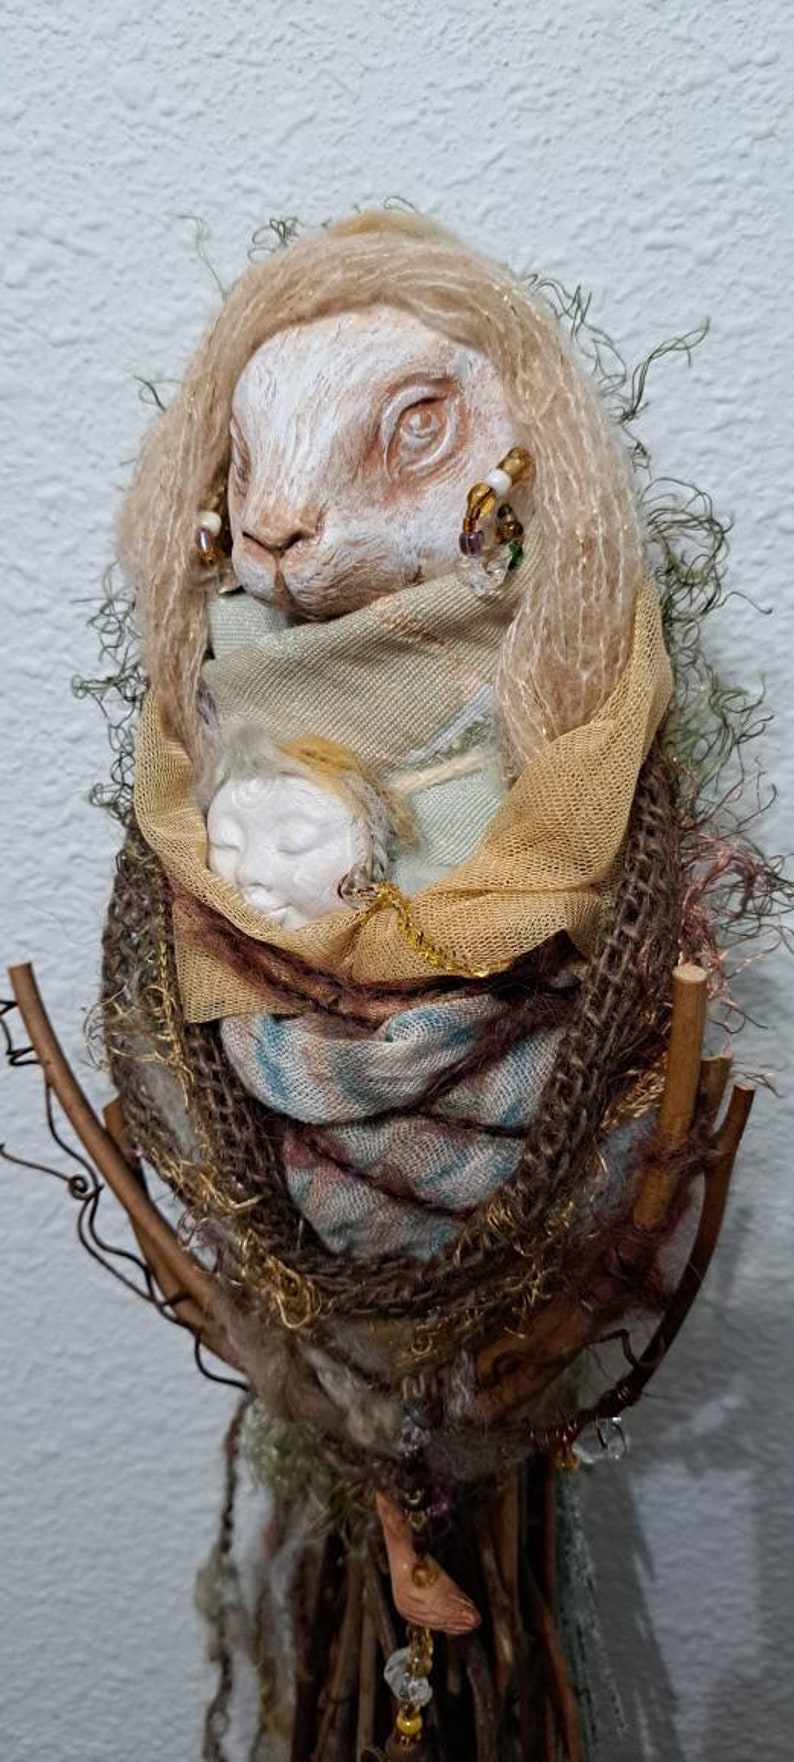 OOAK Art doll, Anthropomorphic Hare Spirit, Nature lover gift image 3